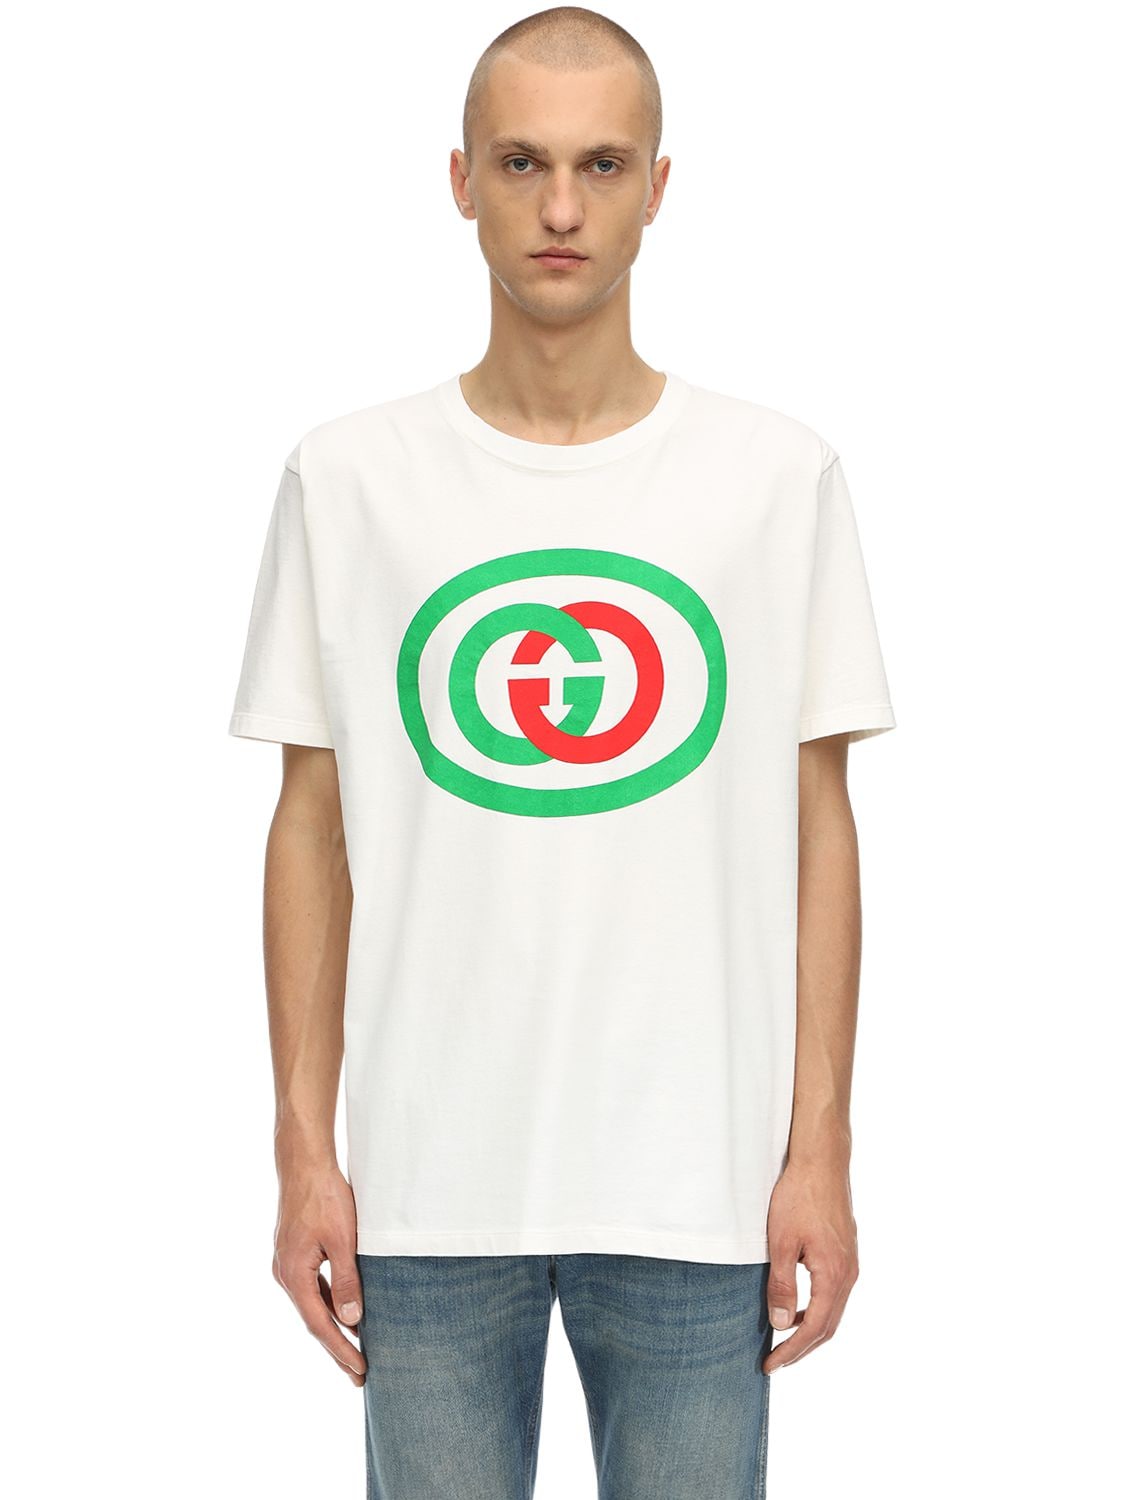 Gg Interlock Logo Printed Cotton T-shirt | The Fashionisto